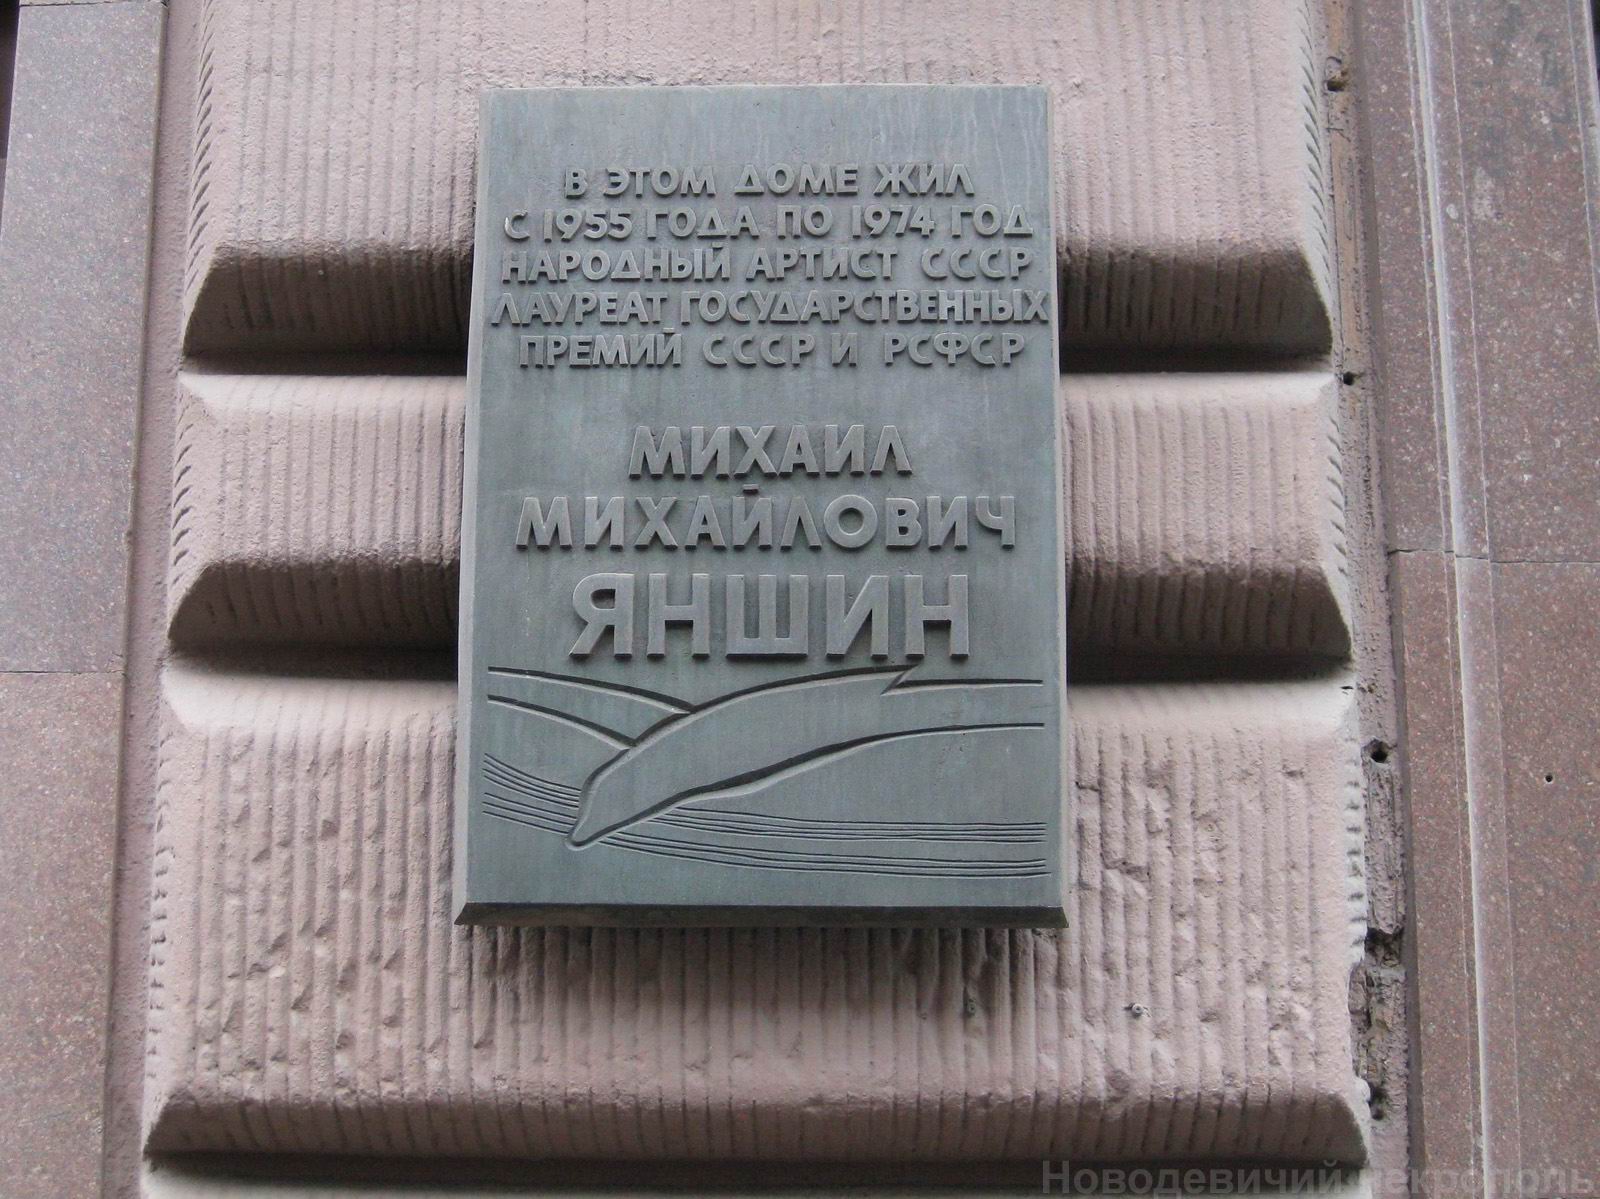 Мемориальная доска Яншину М.М. (1902-1976), арх. Г.И.Гаврилов, на 1-й Тверской-Ямской улице, дом 28, открыта 2.2.1979.